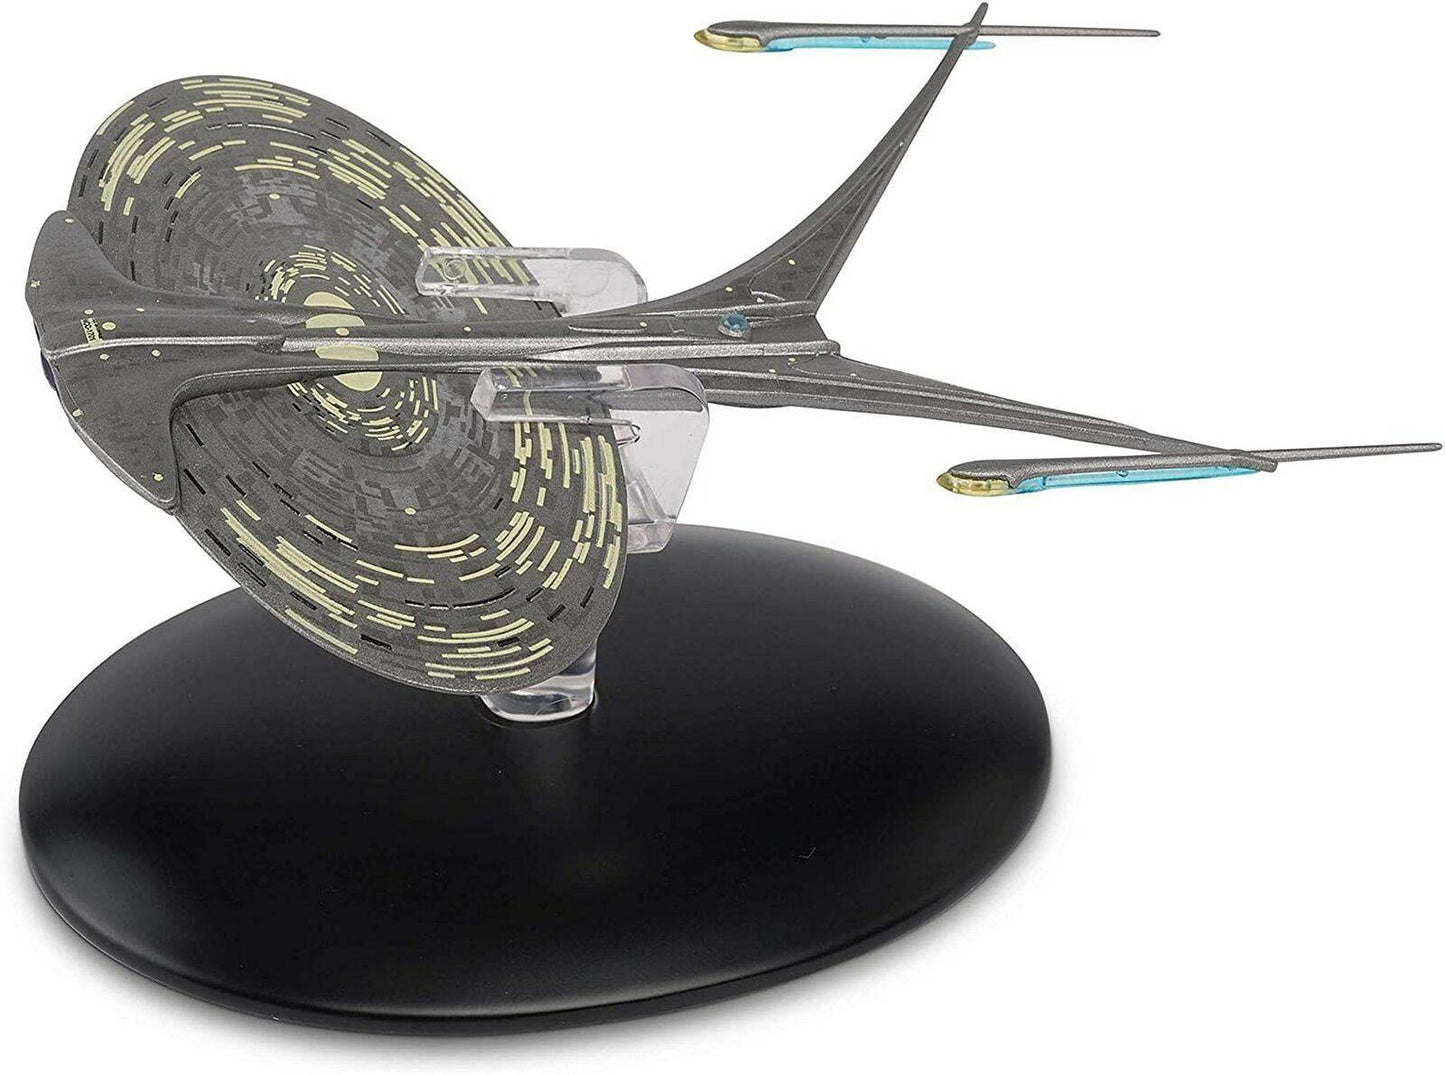 #89 U.S.S. Enterprise NCC-1701-J Starship Die-Cast Model (Eaglemoss / Star Trek)